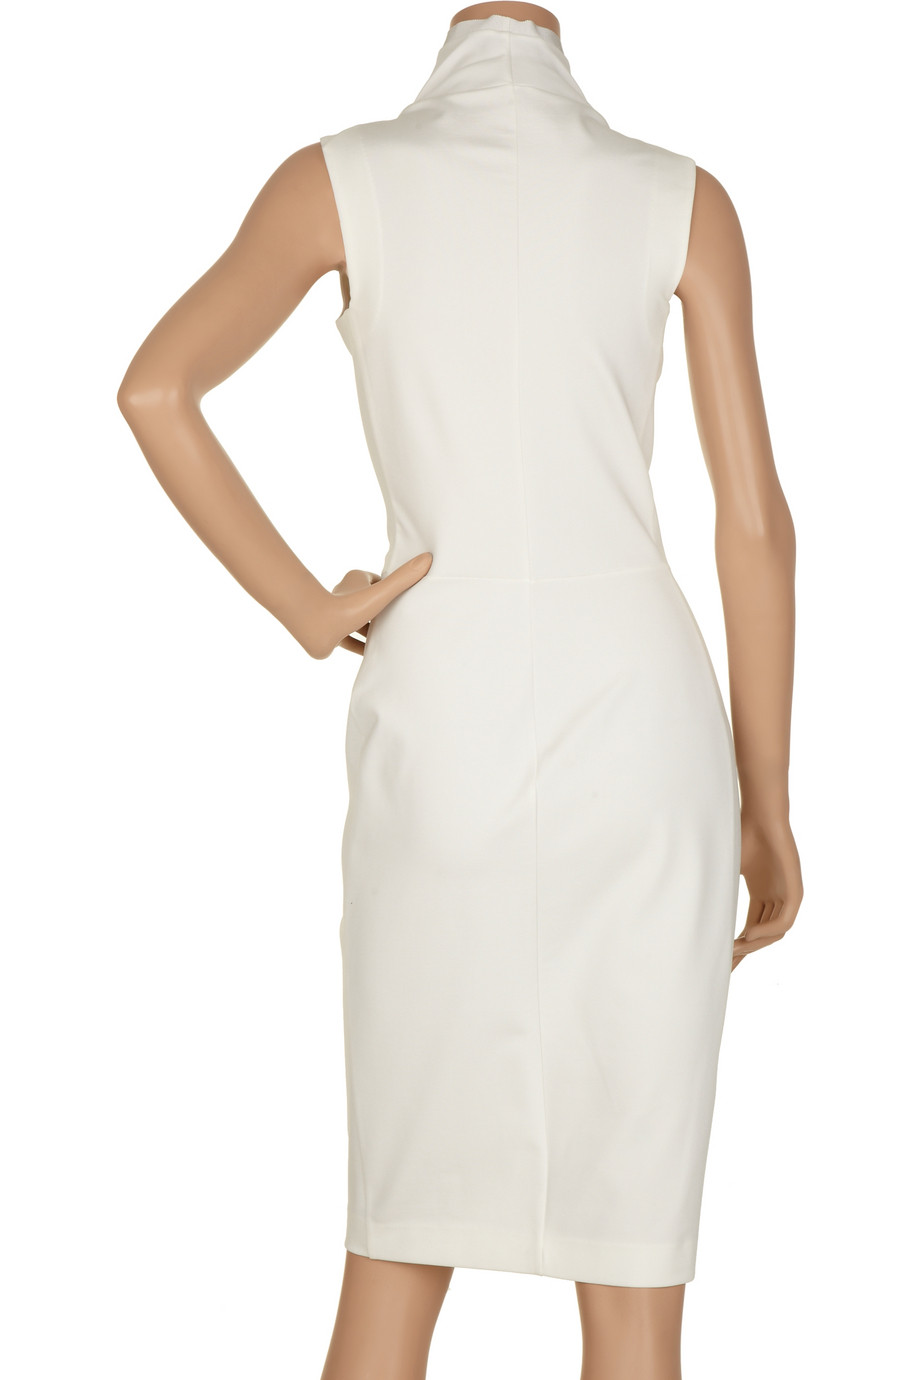 Calvin Klein Asymmetric Structured Stretch-jersey Dress in White - Lyst